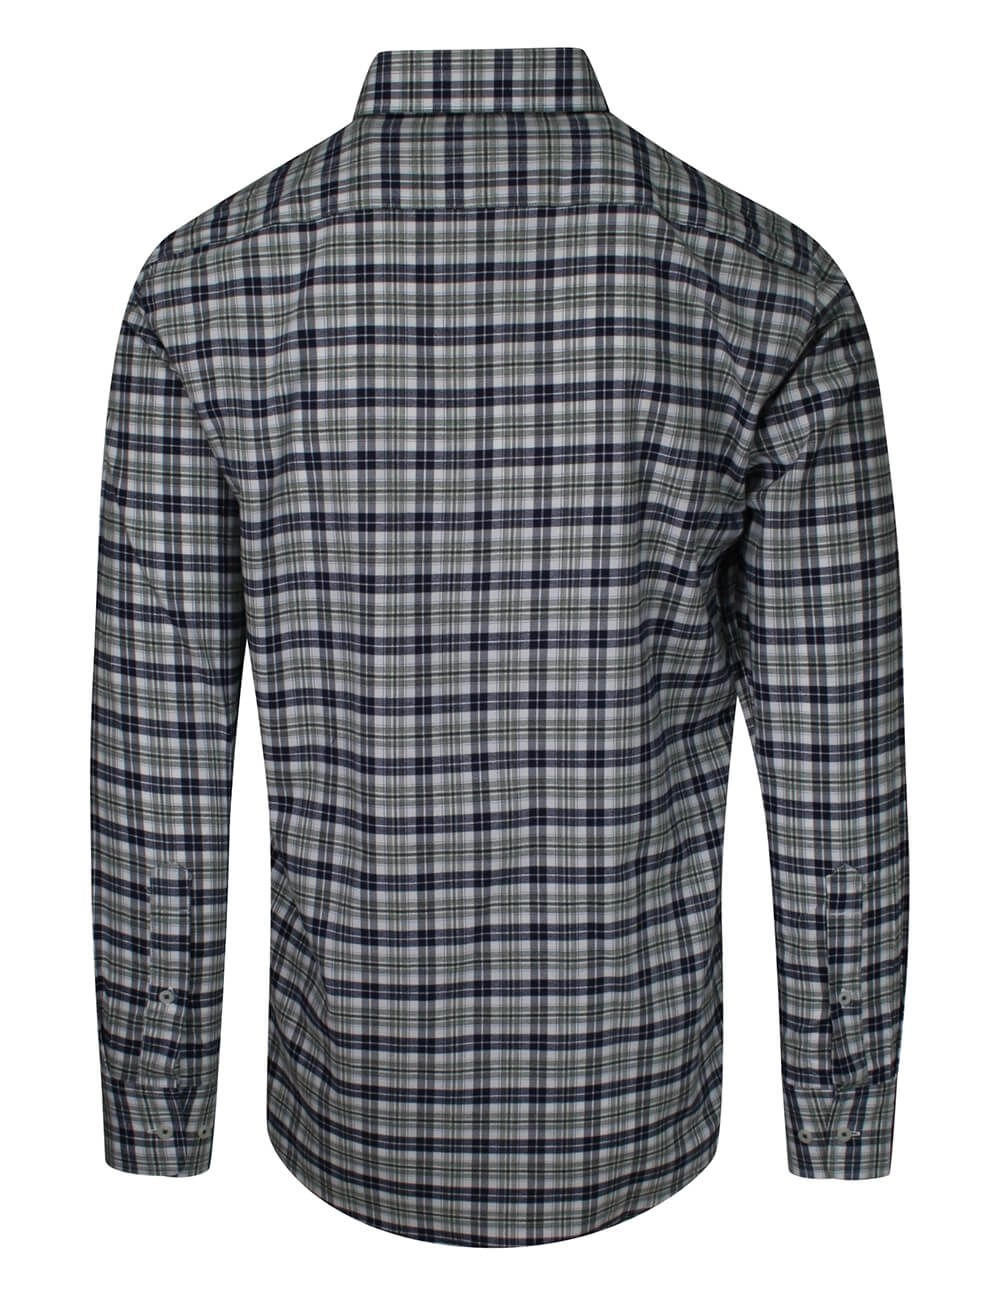 Koszula Męska, Granatowo-Szara w Kratkę, z Długim Rękawem, 100% Bawełna, Taliowana -CHIAO